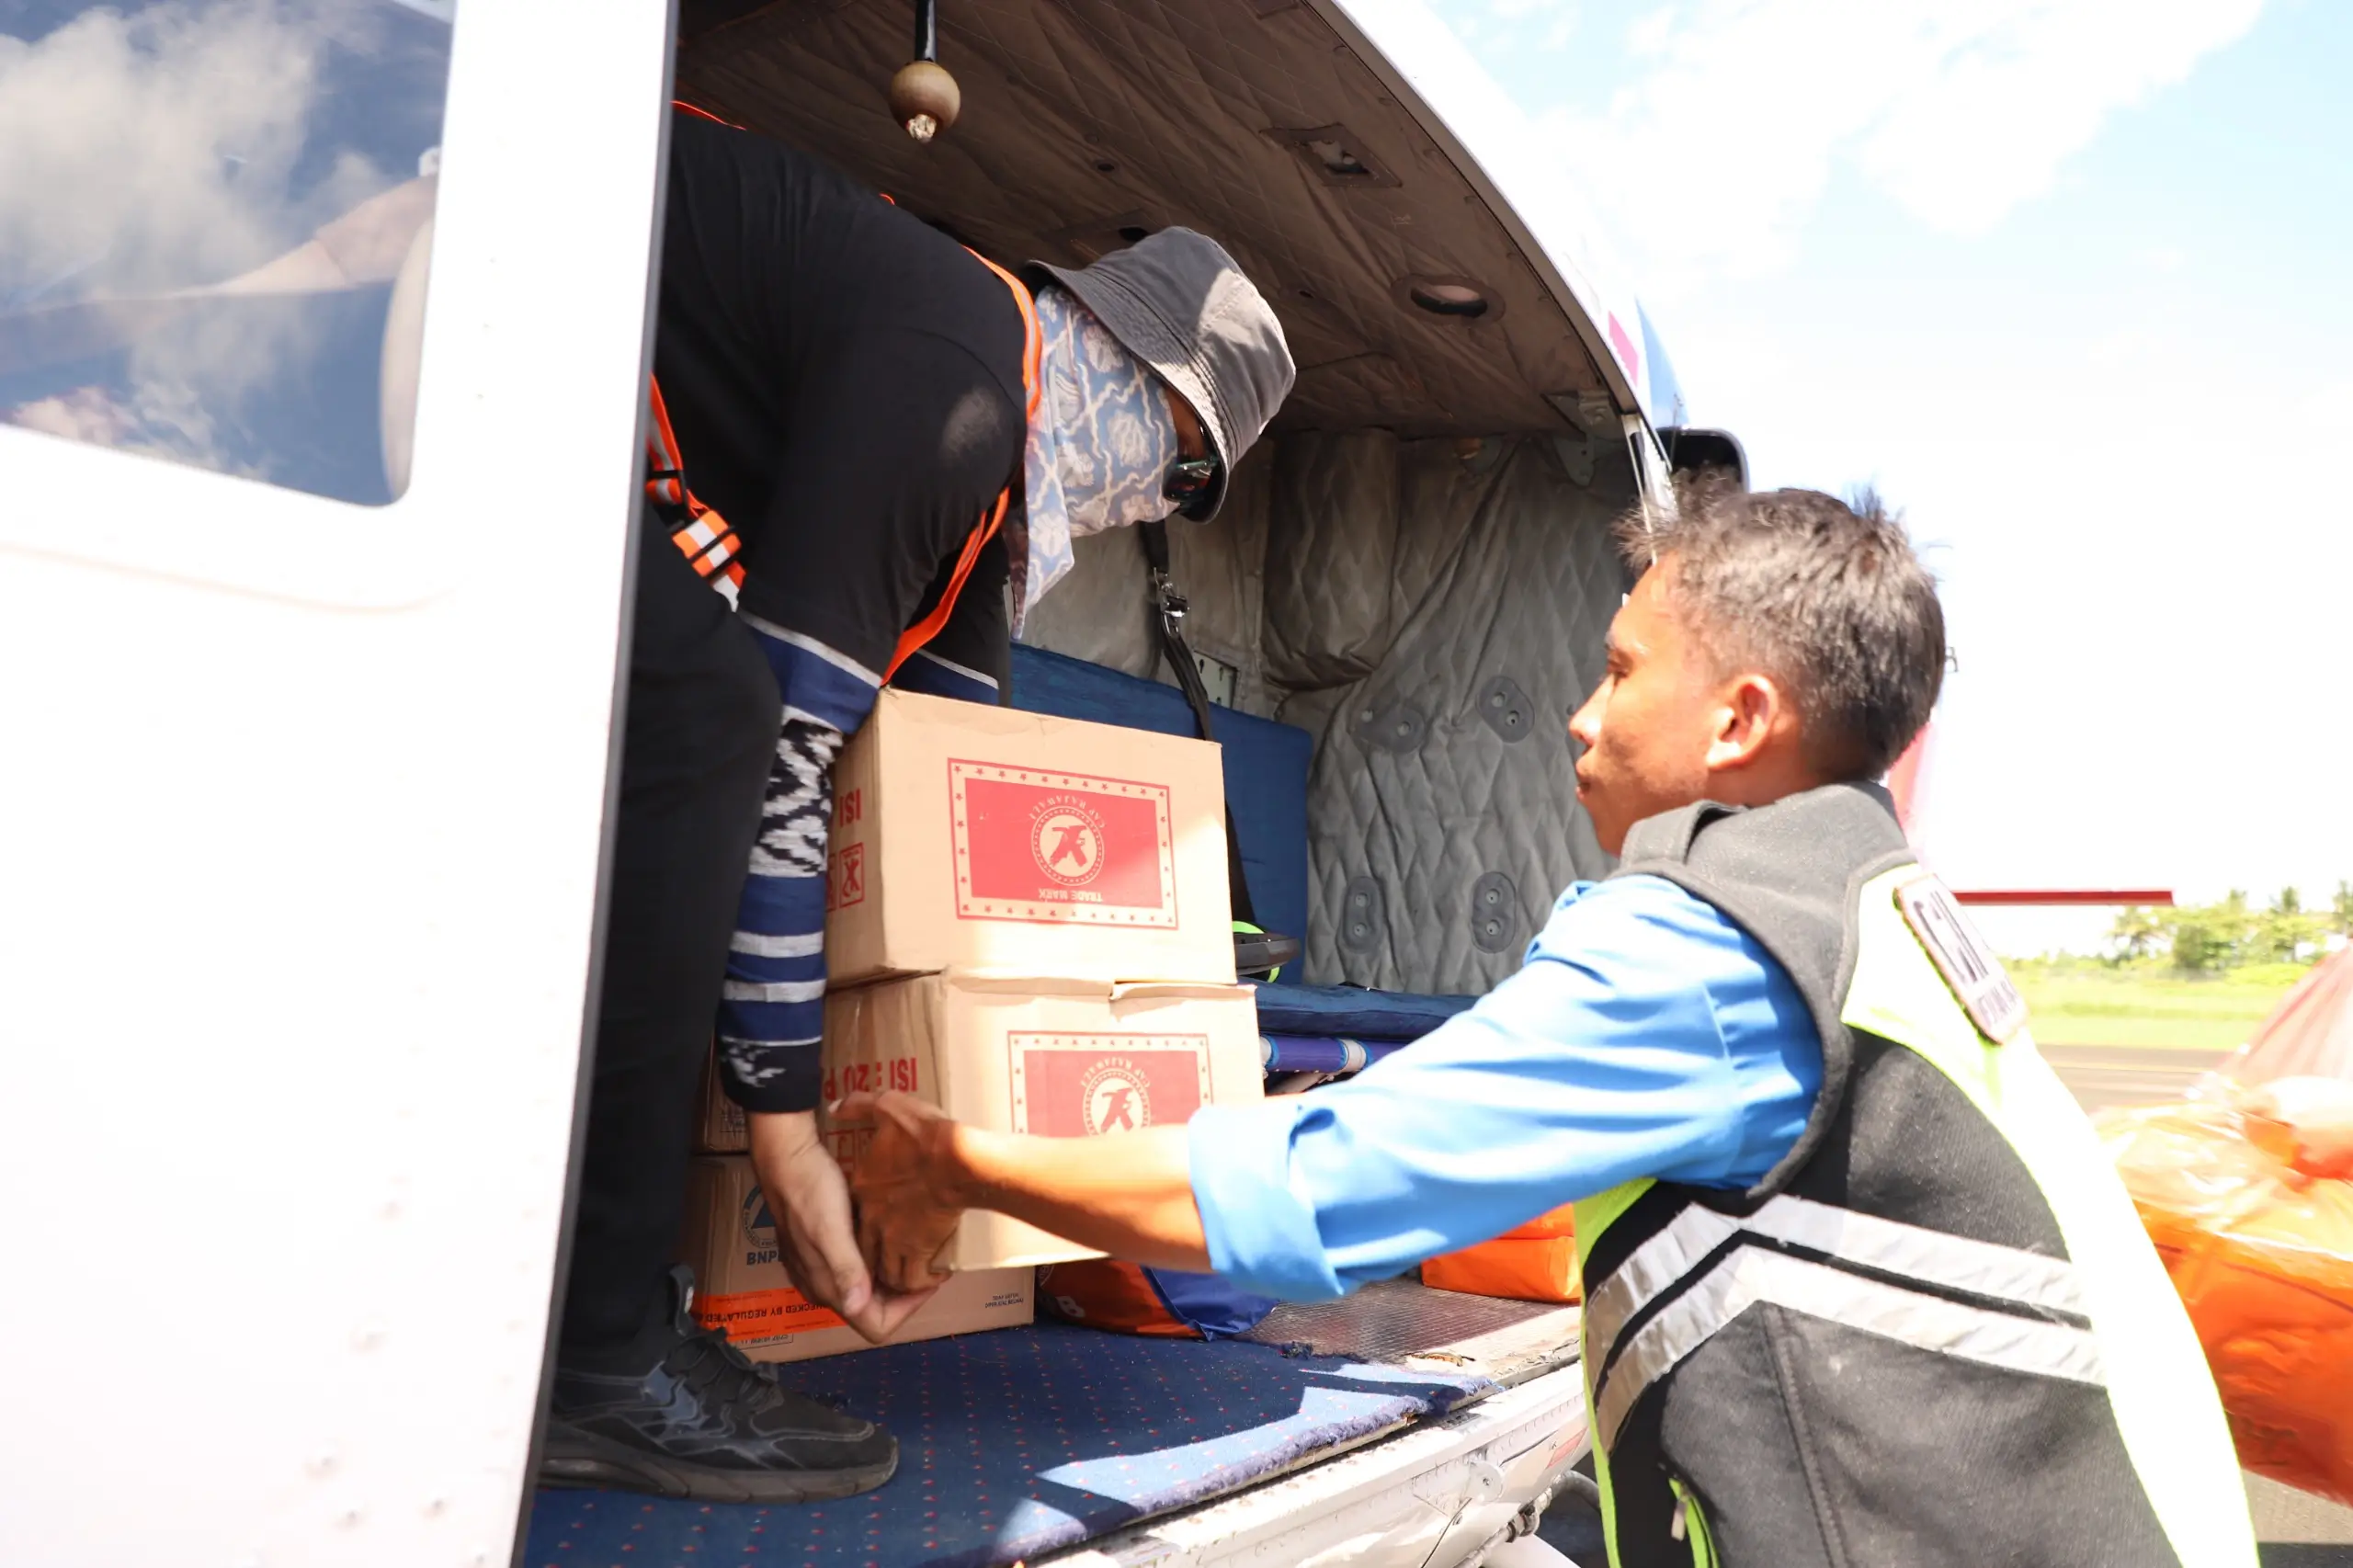 Proses loading bantuan logistik yang didistribusikan melalui helikopter pada penanganan darurat banjir dan tanah longsor di Kabupaten Luwu, Sulawesi Selatan, Selasa (7/5).